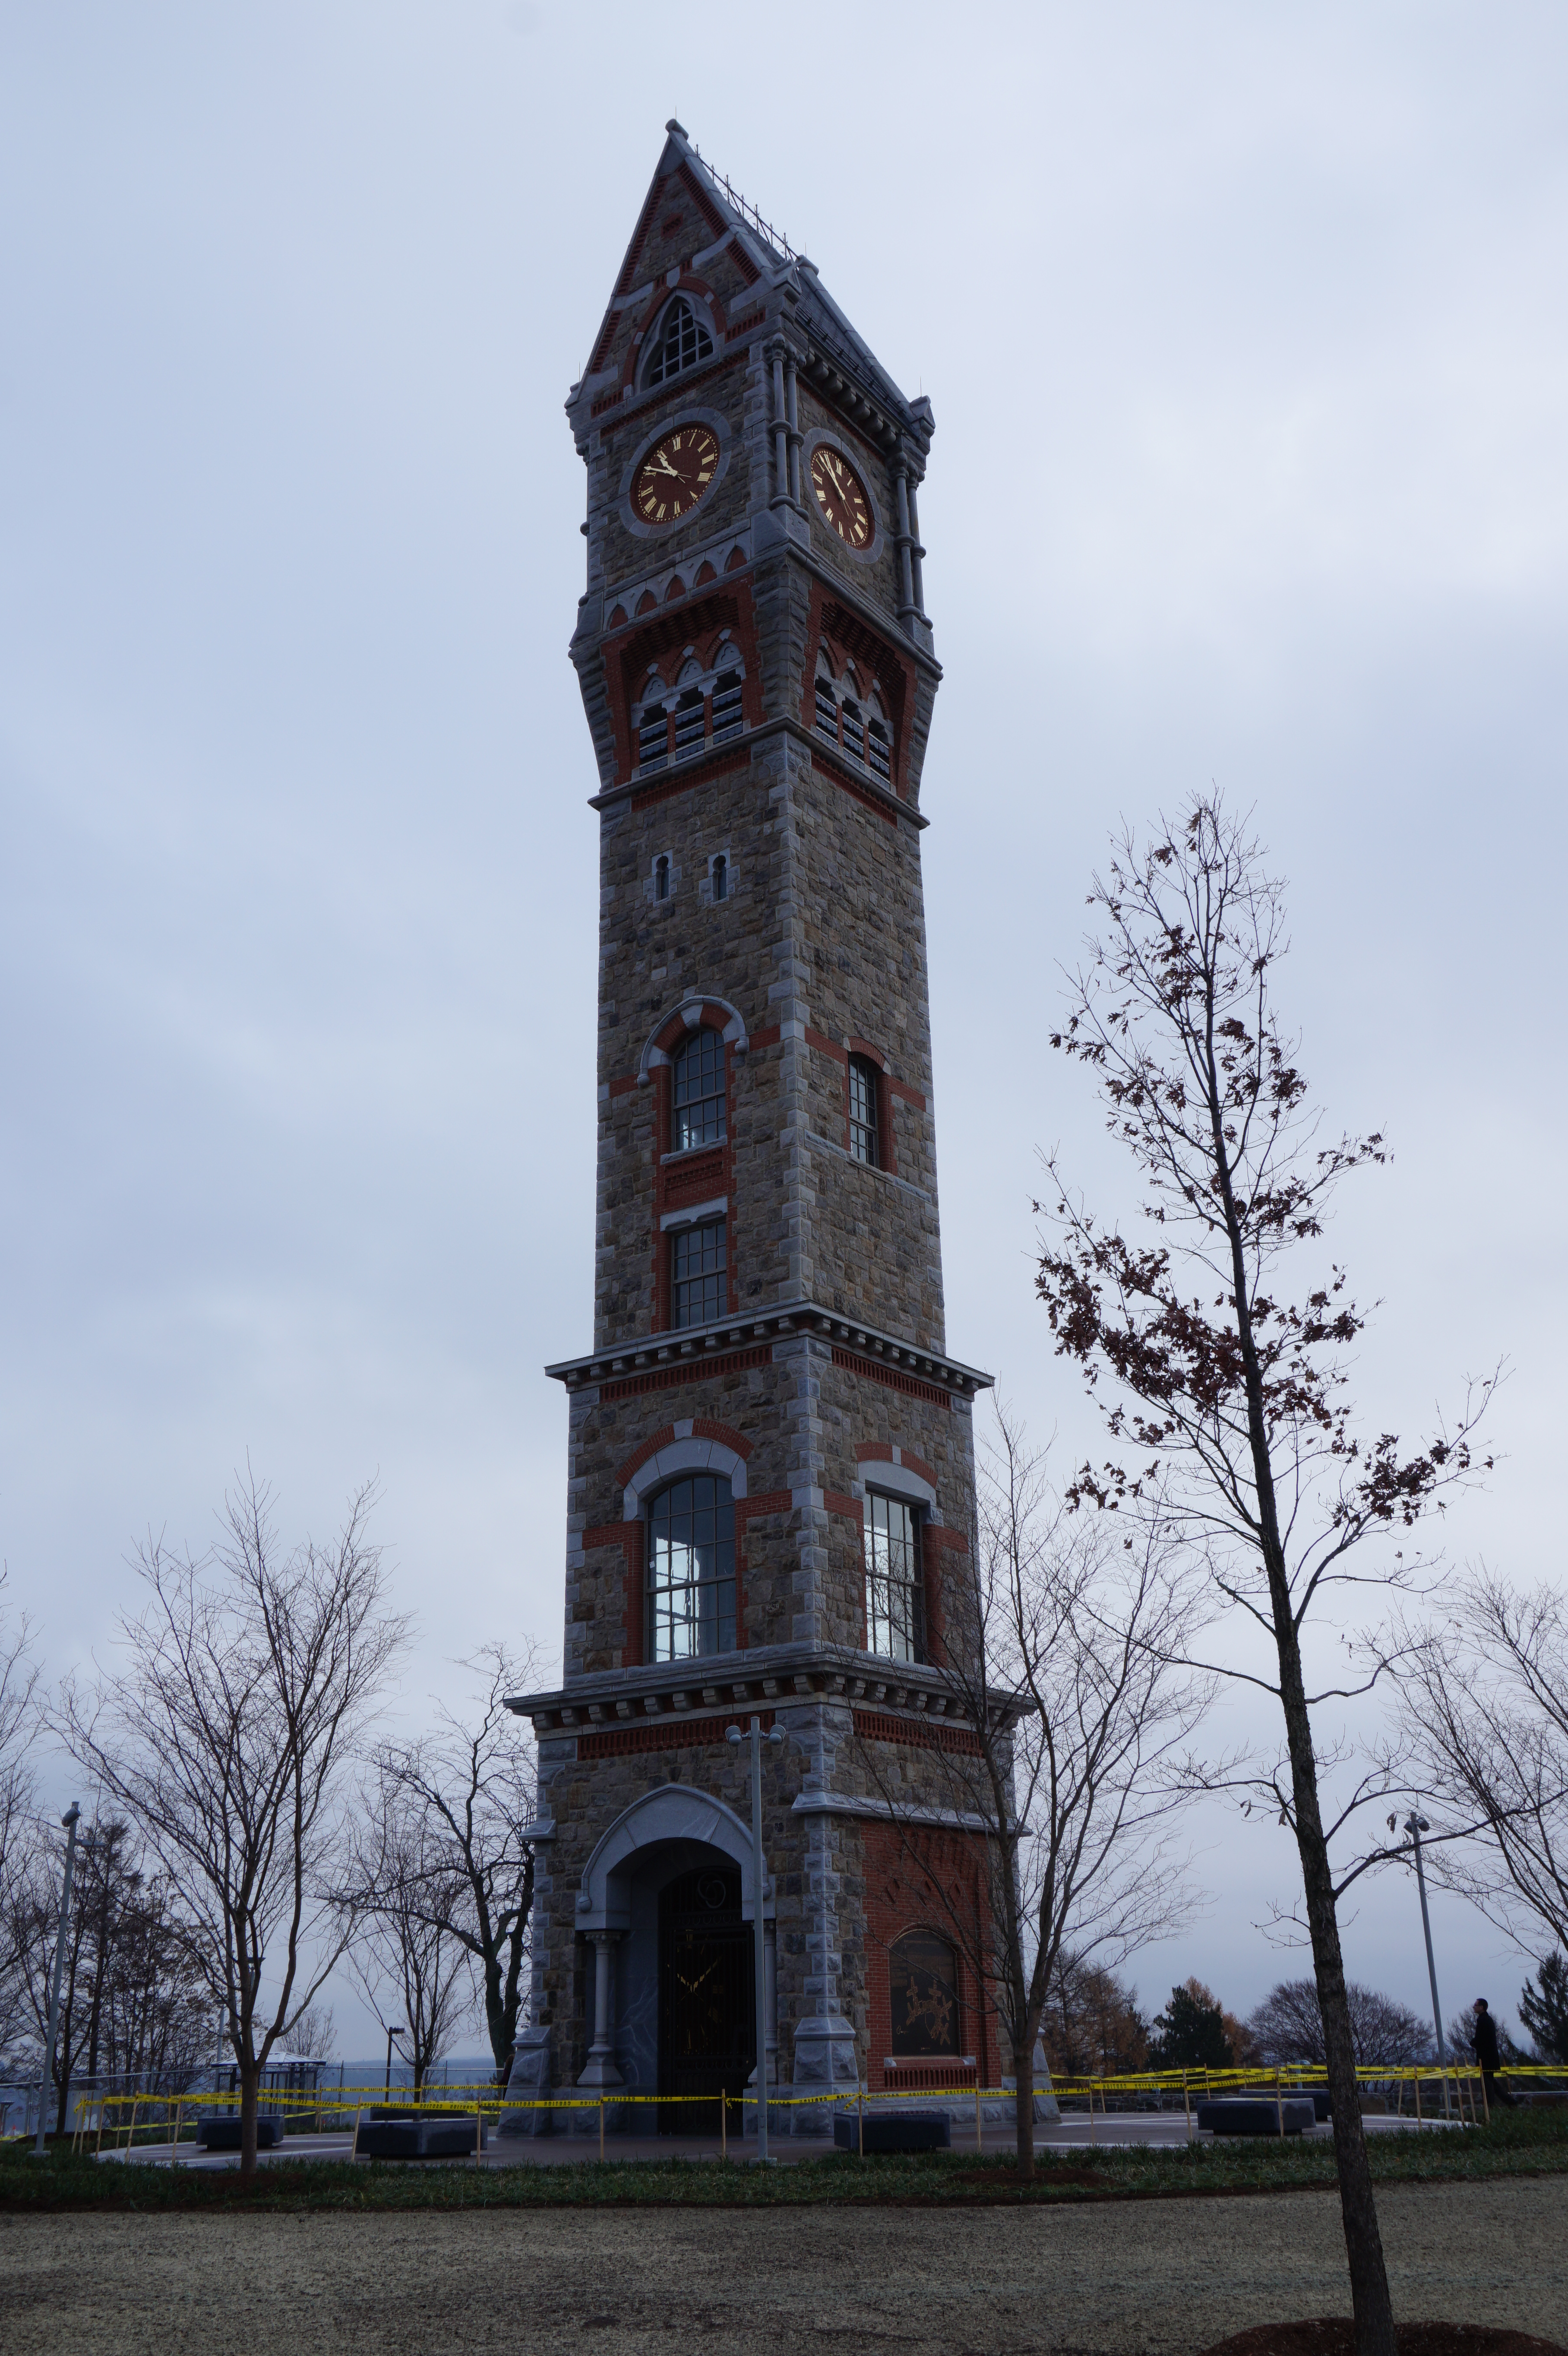 Clock tower dedication caps preservation efforts - Worcester Mag